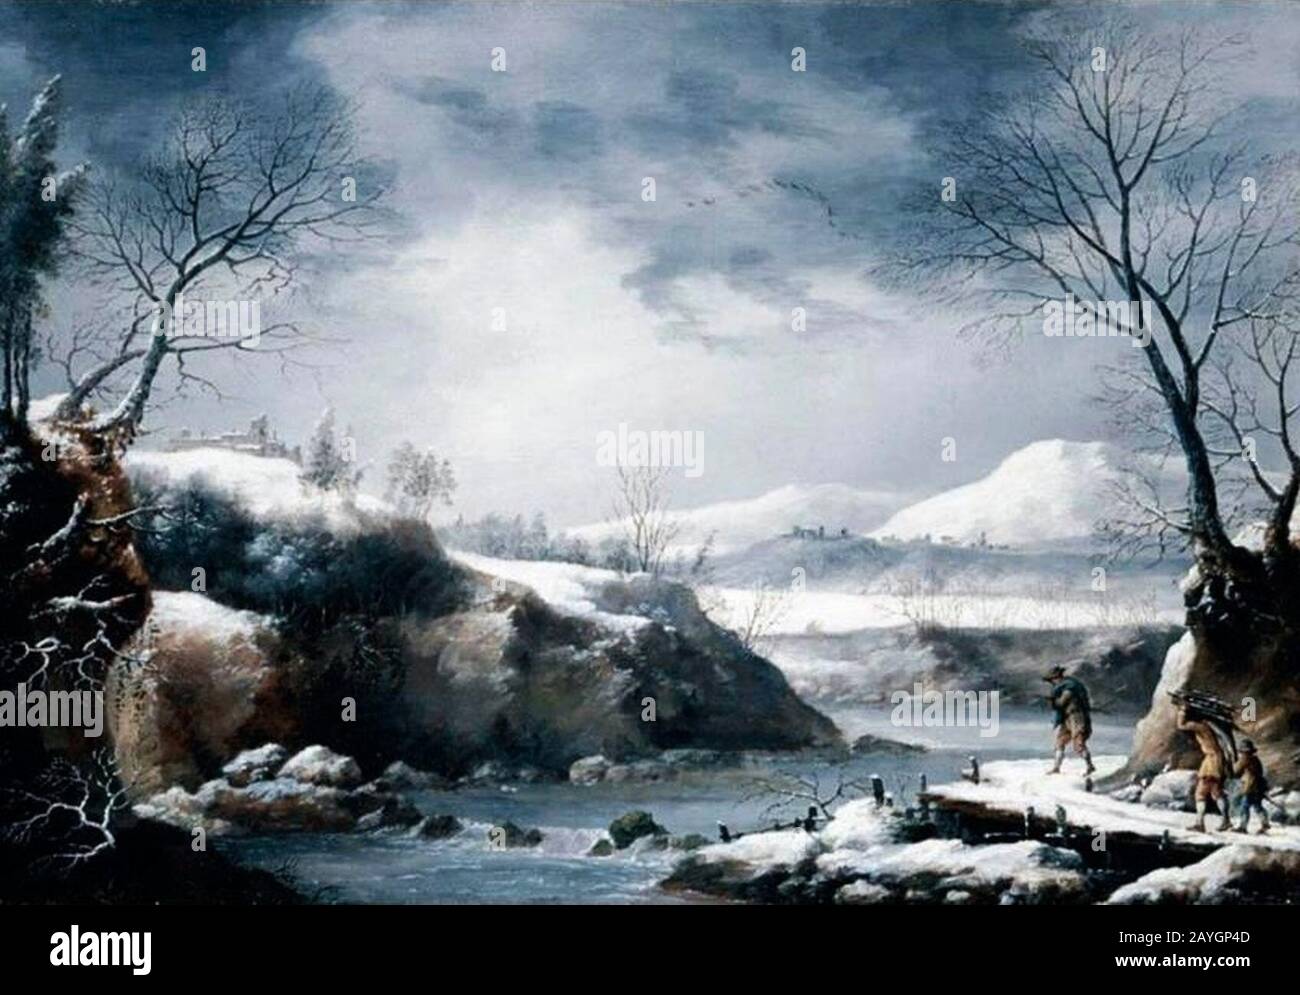 Francesco Foschi - EINE Winterlandschaft mit Figuren, die neben einem Fluss Holz tragen. Stockfoto